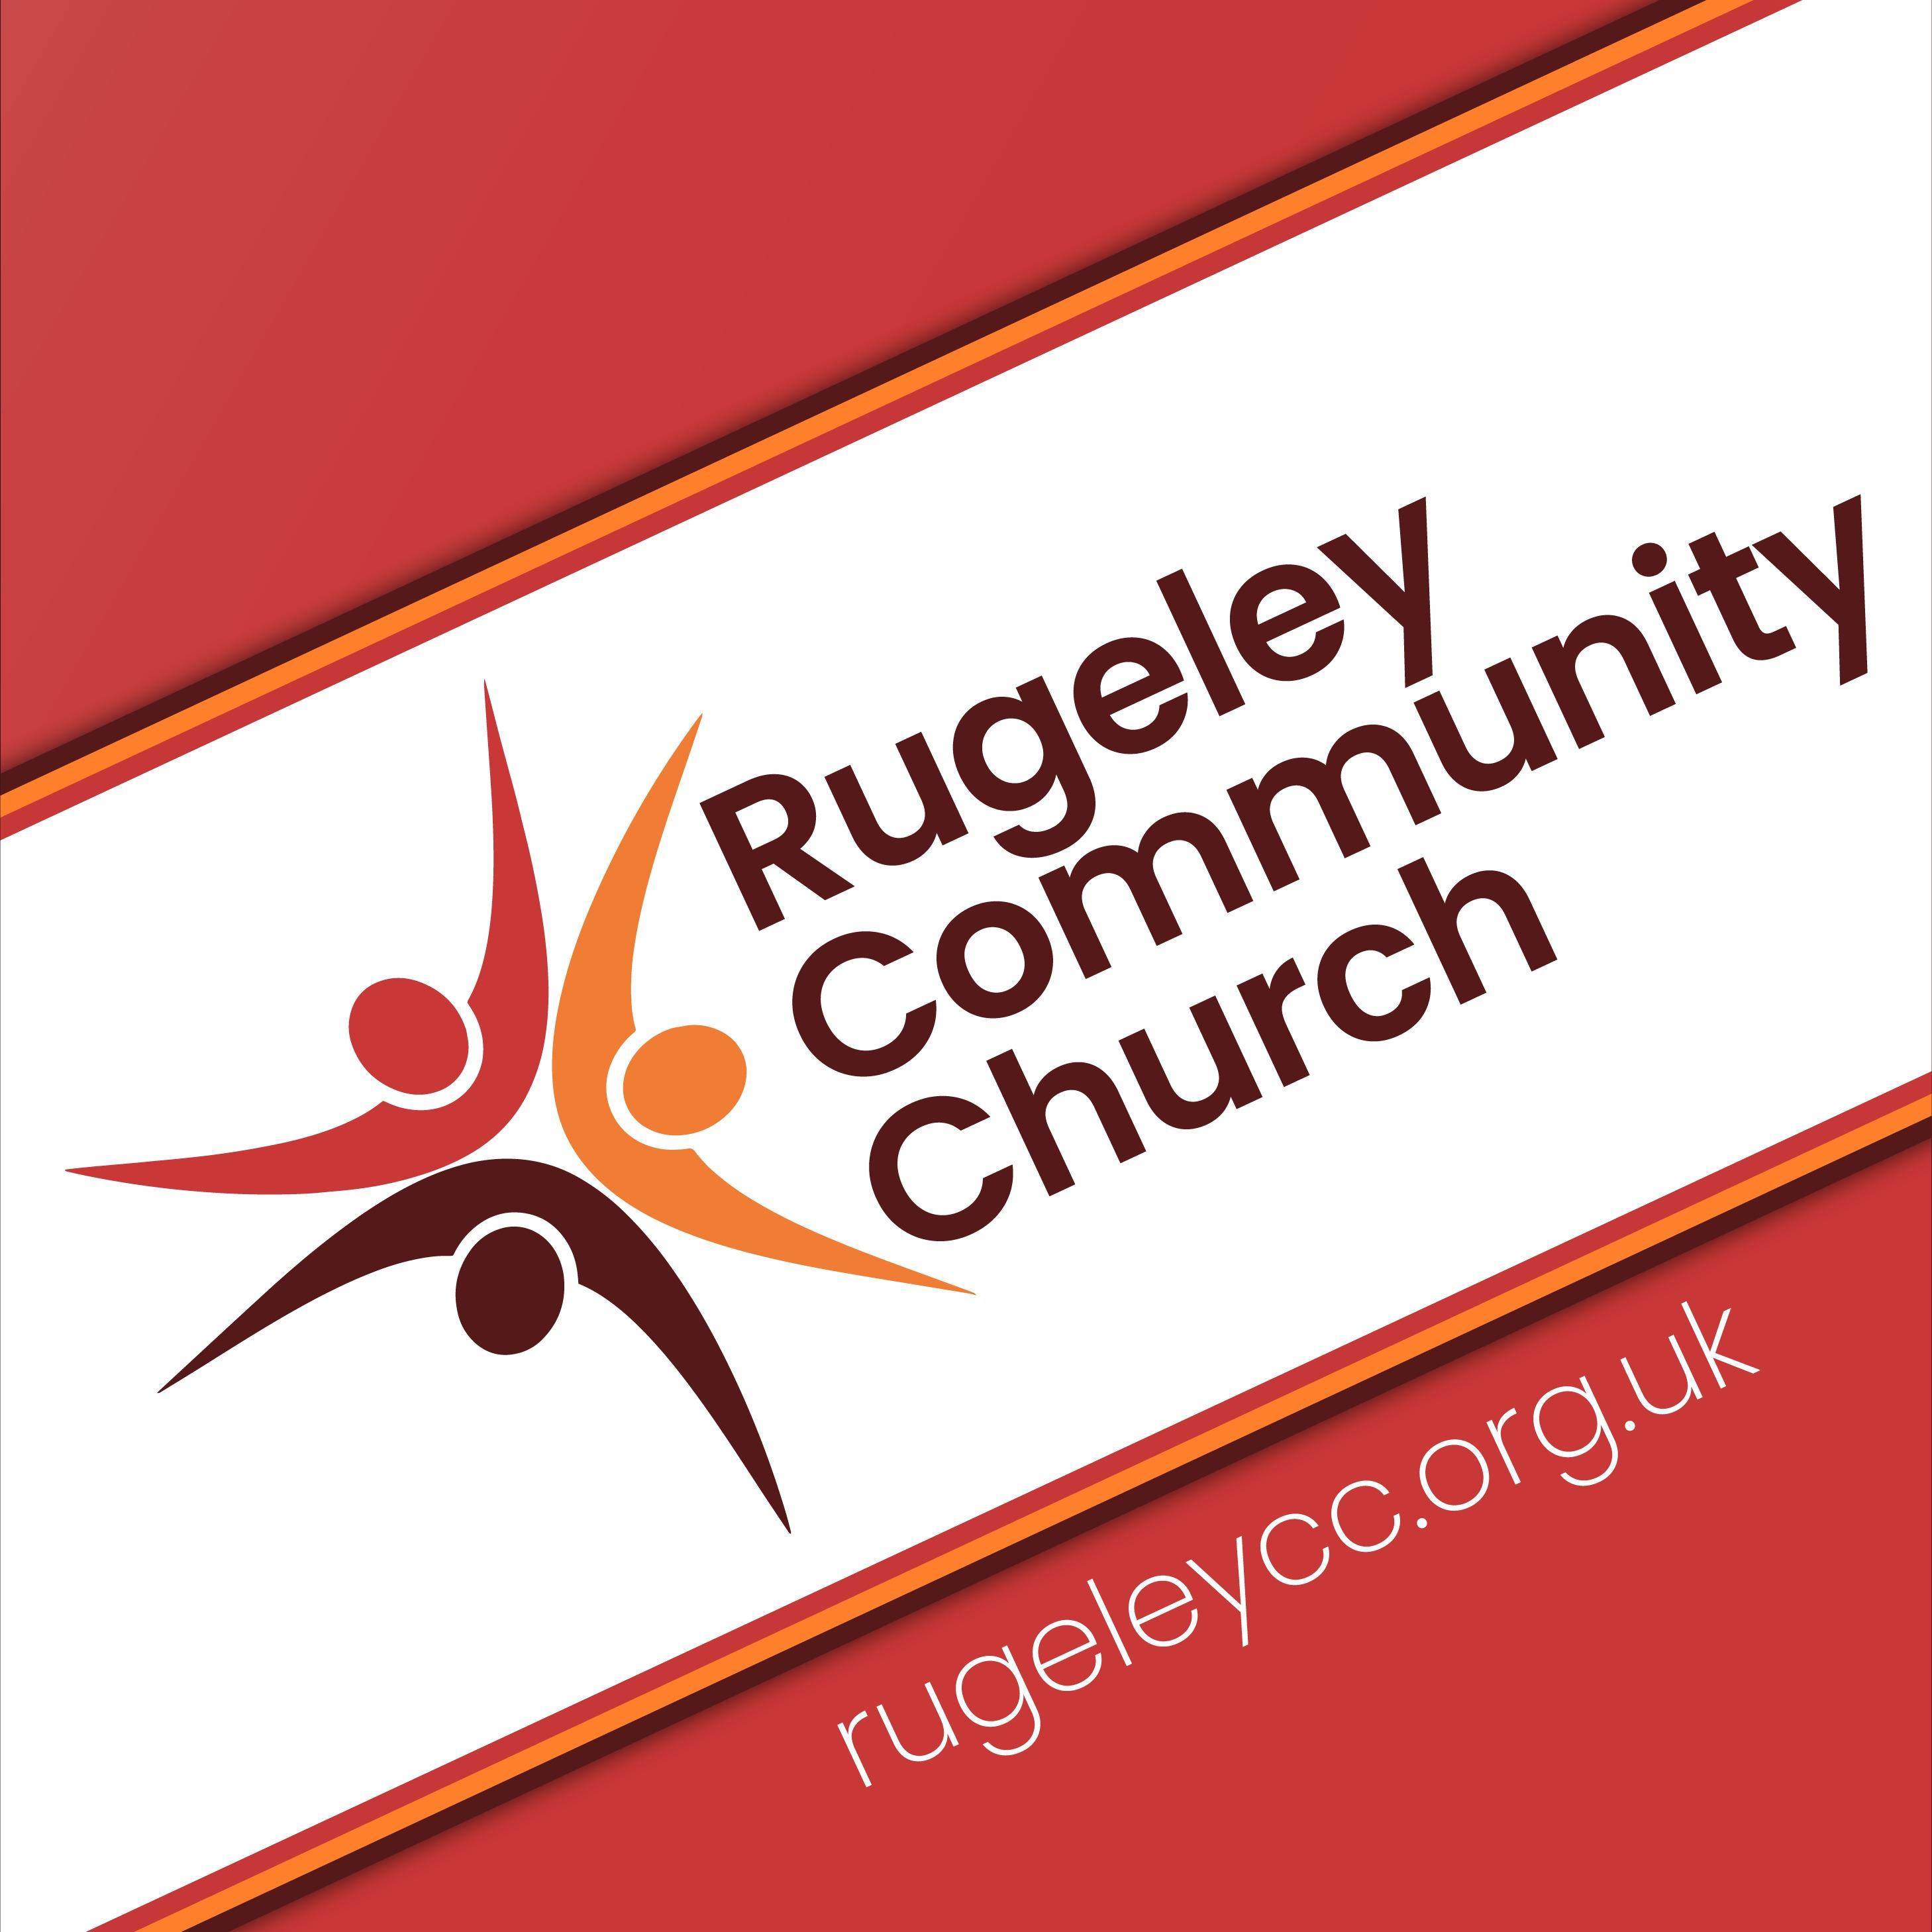 Rugeley Community Church